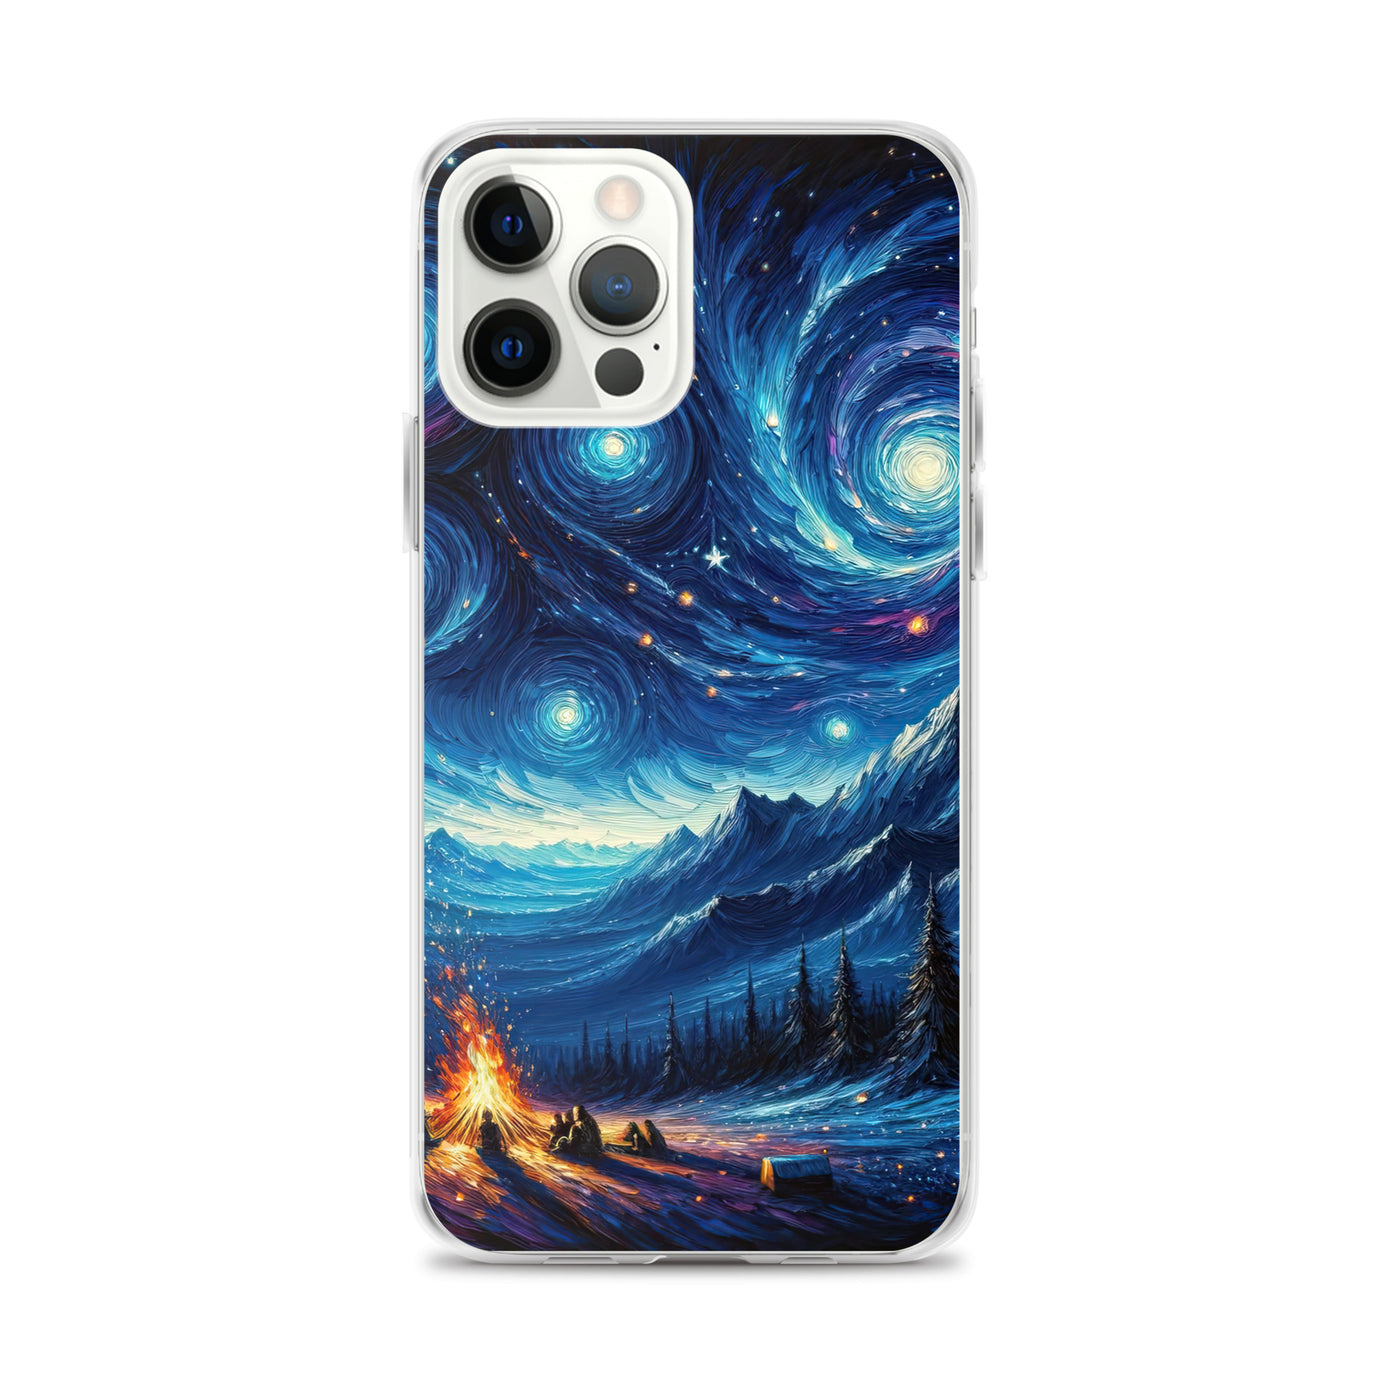 Sternennacht über den Alpen inspiriertes Ölgemälde, mystischer Nachthimmel in Blau - iPhone Schutzhülle (durchsichtig) camping xxx yyy zzz iPhone 12 Pro Max